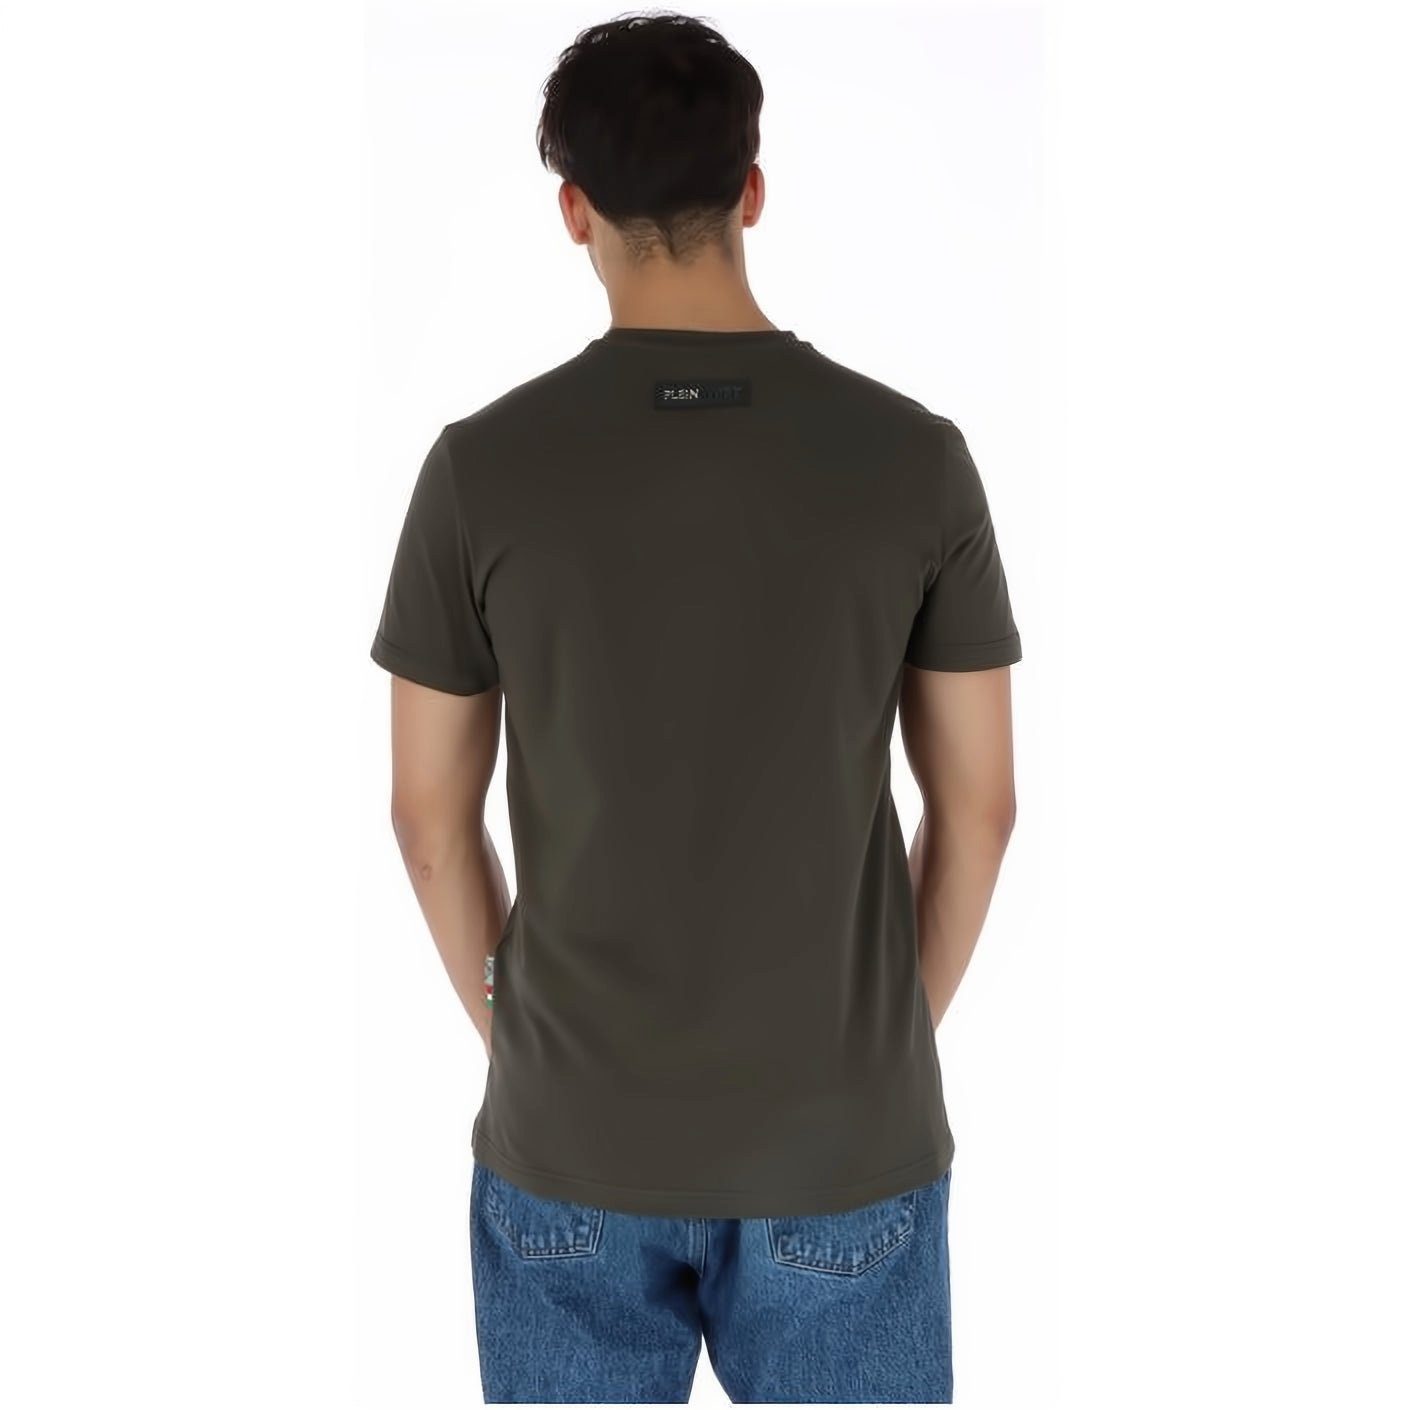 PLEIN SPORT T-Shirt NECK Look, Farbauswahl Tragekomfort, hoher Stylischer vielfältige ROUND